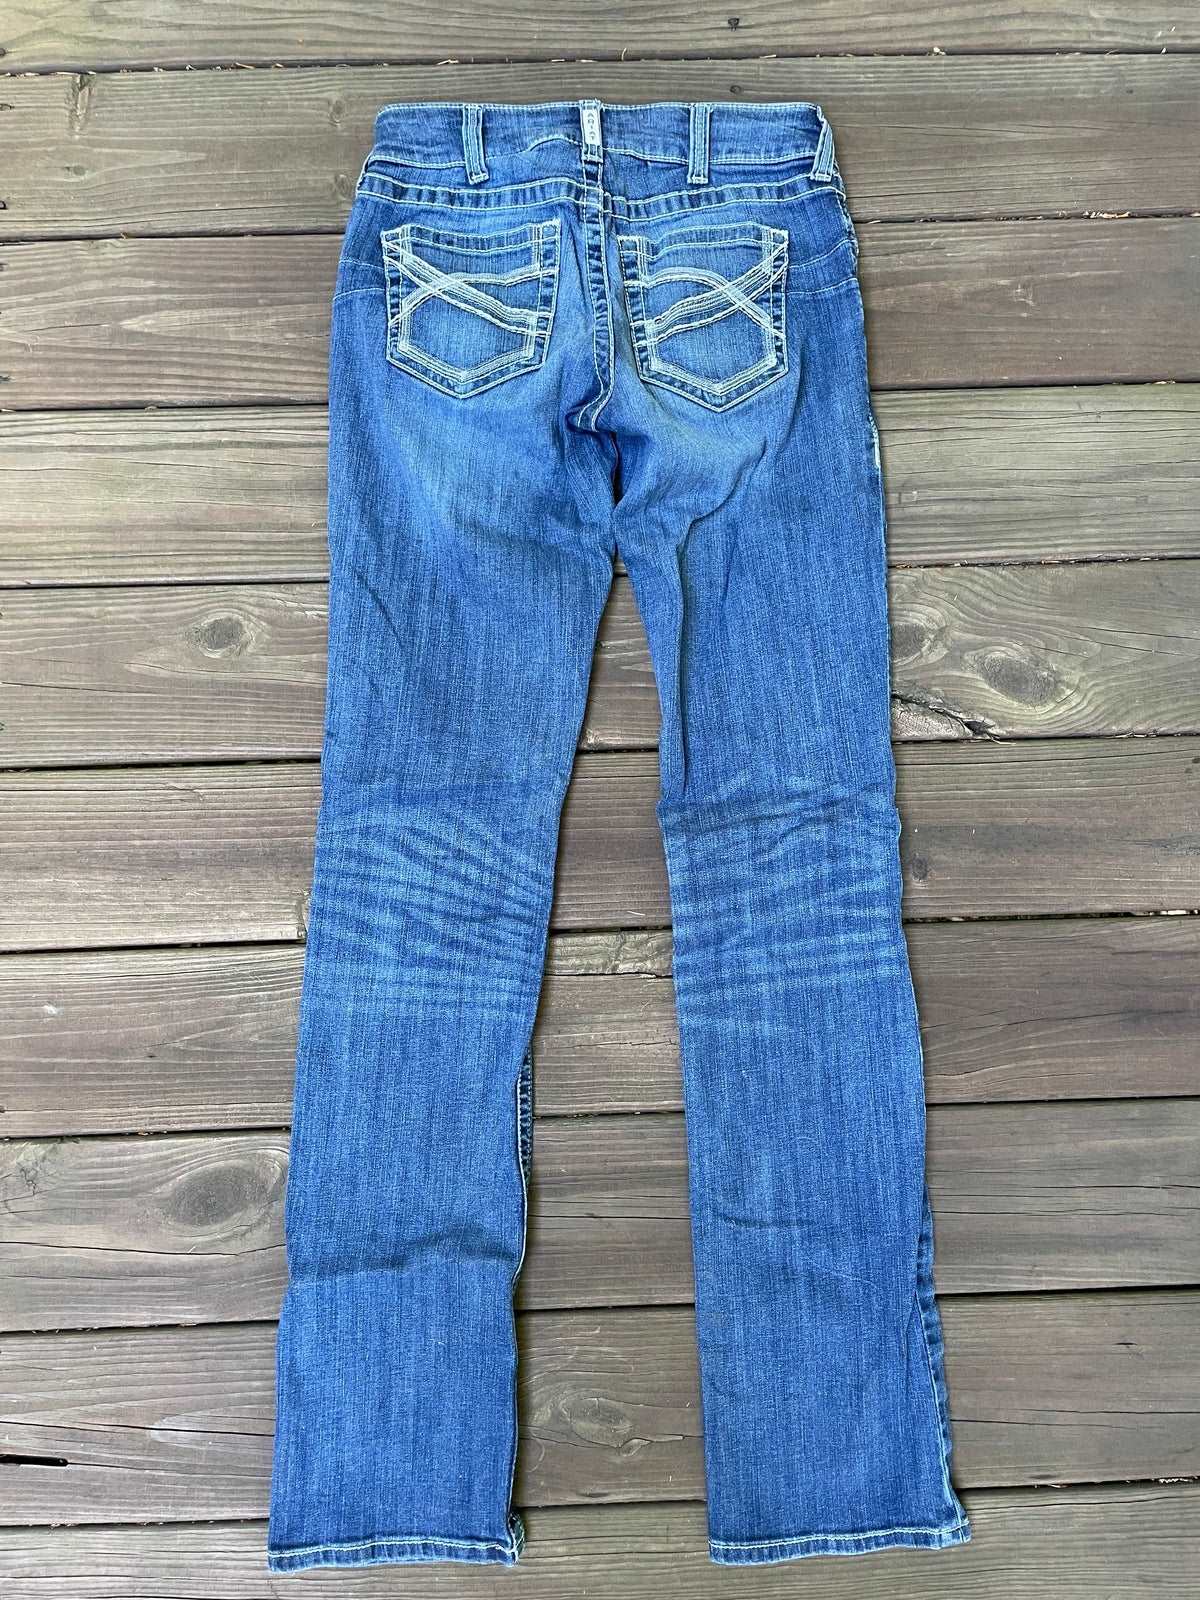 ThriftedEquestrian Ariat Real Denim Jeans - 29XL